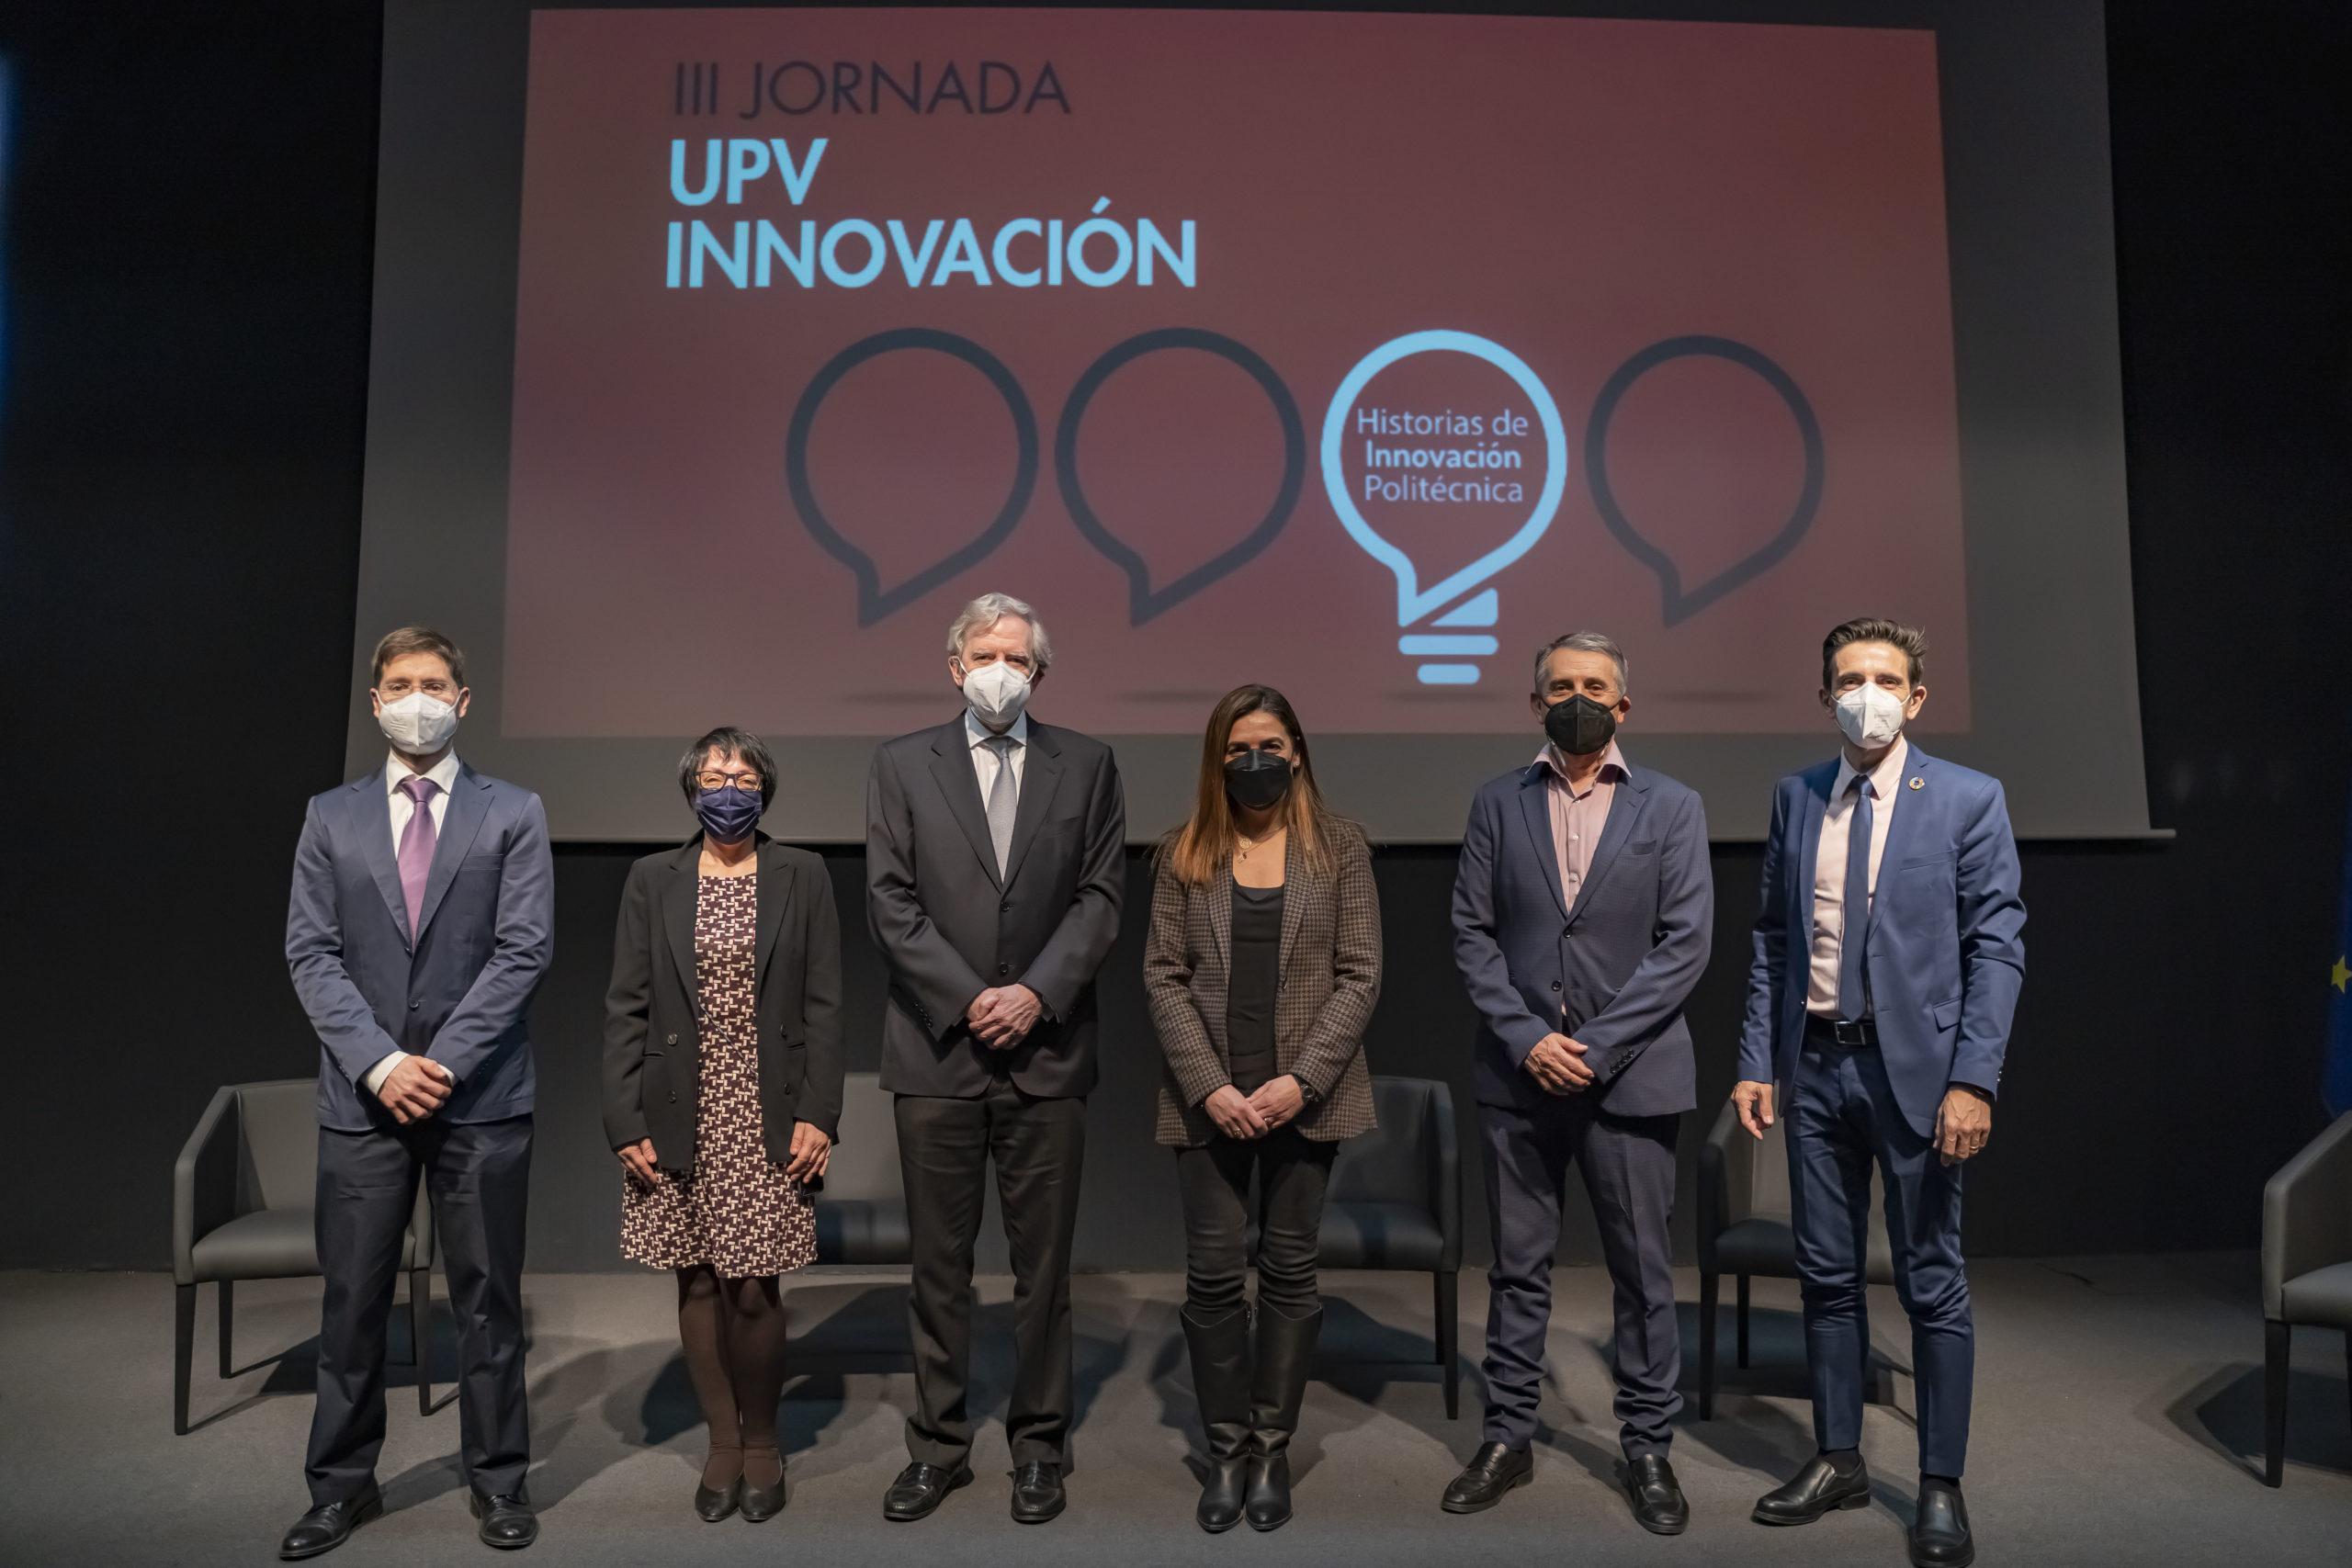 III Jornada UPV Innovacion en sala